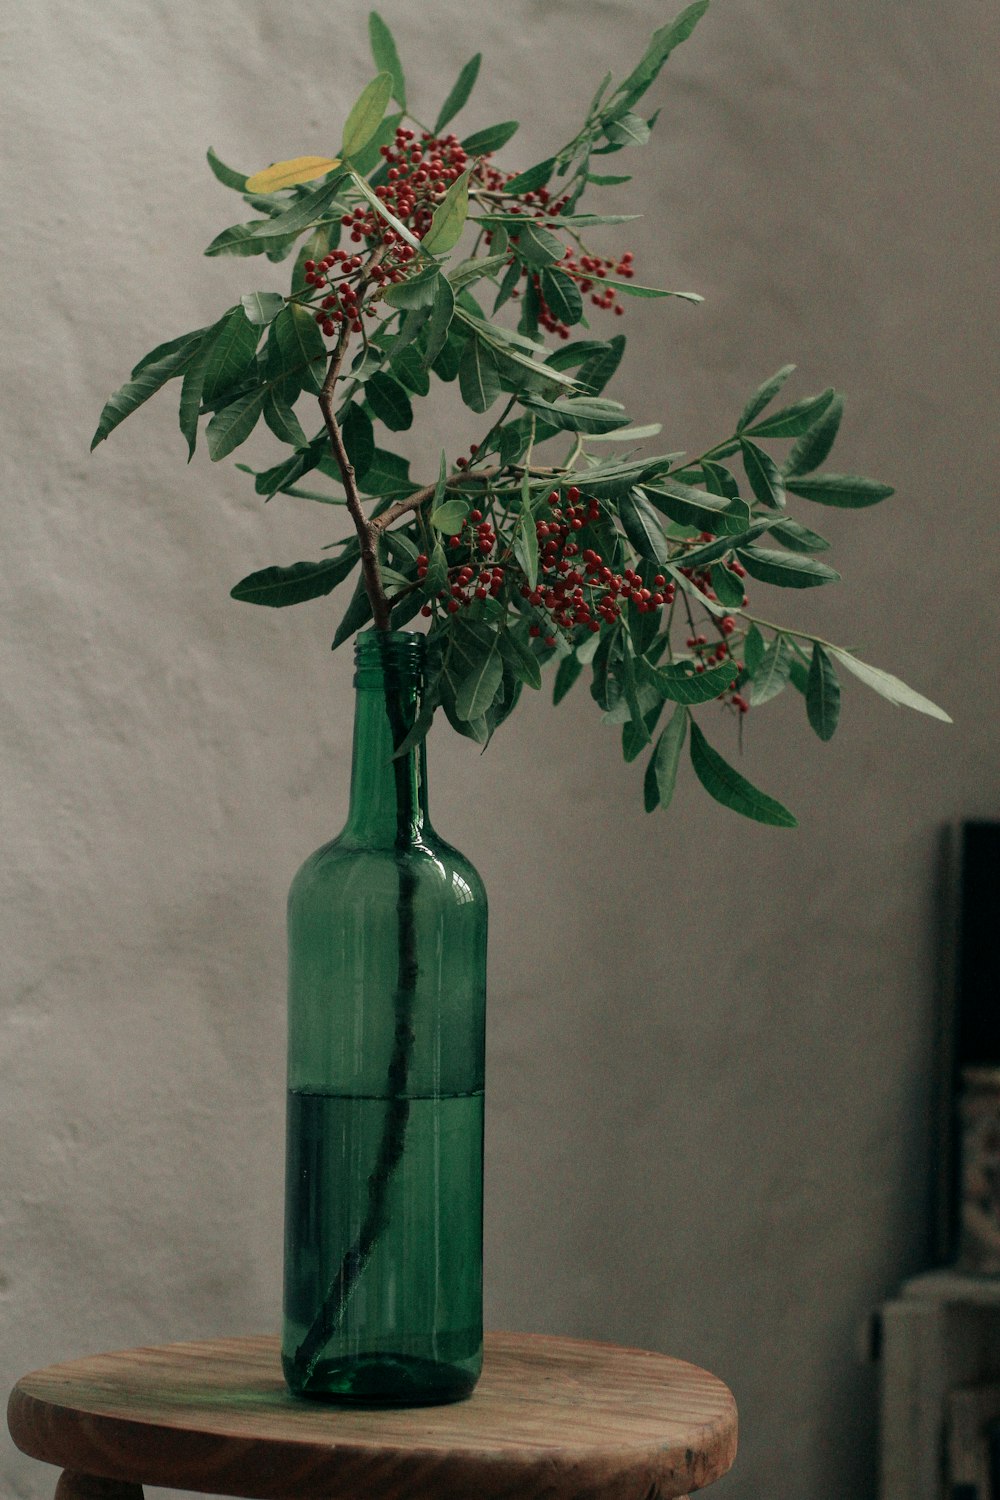 planta vermelha e verde no vaso de vidro verde